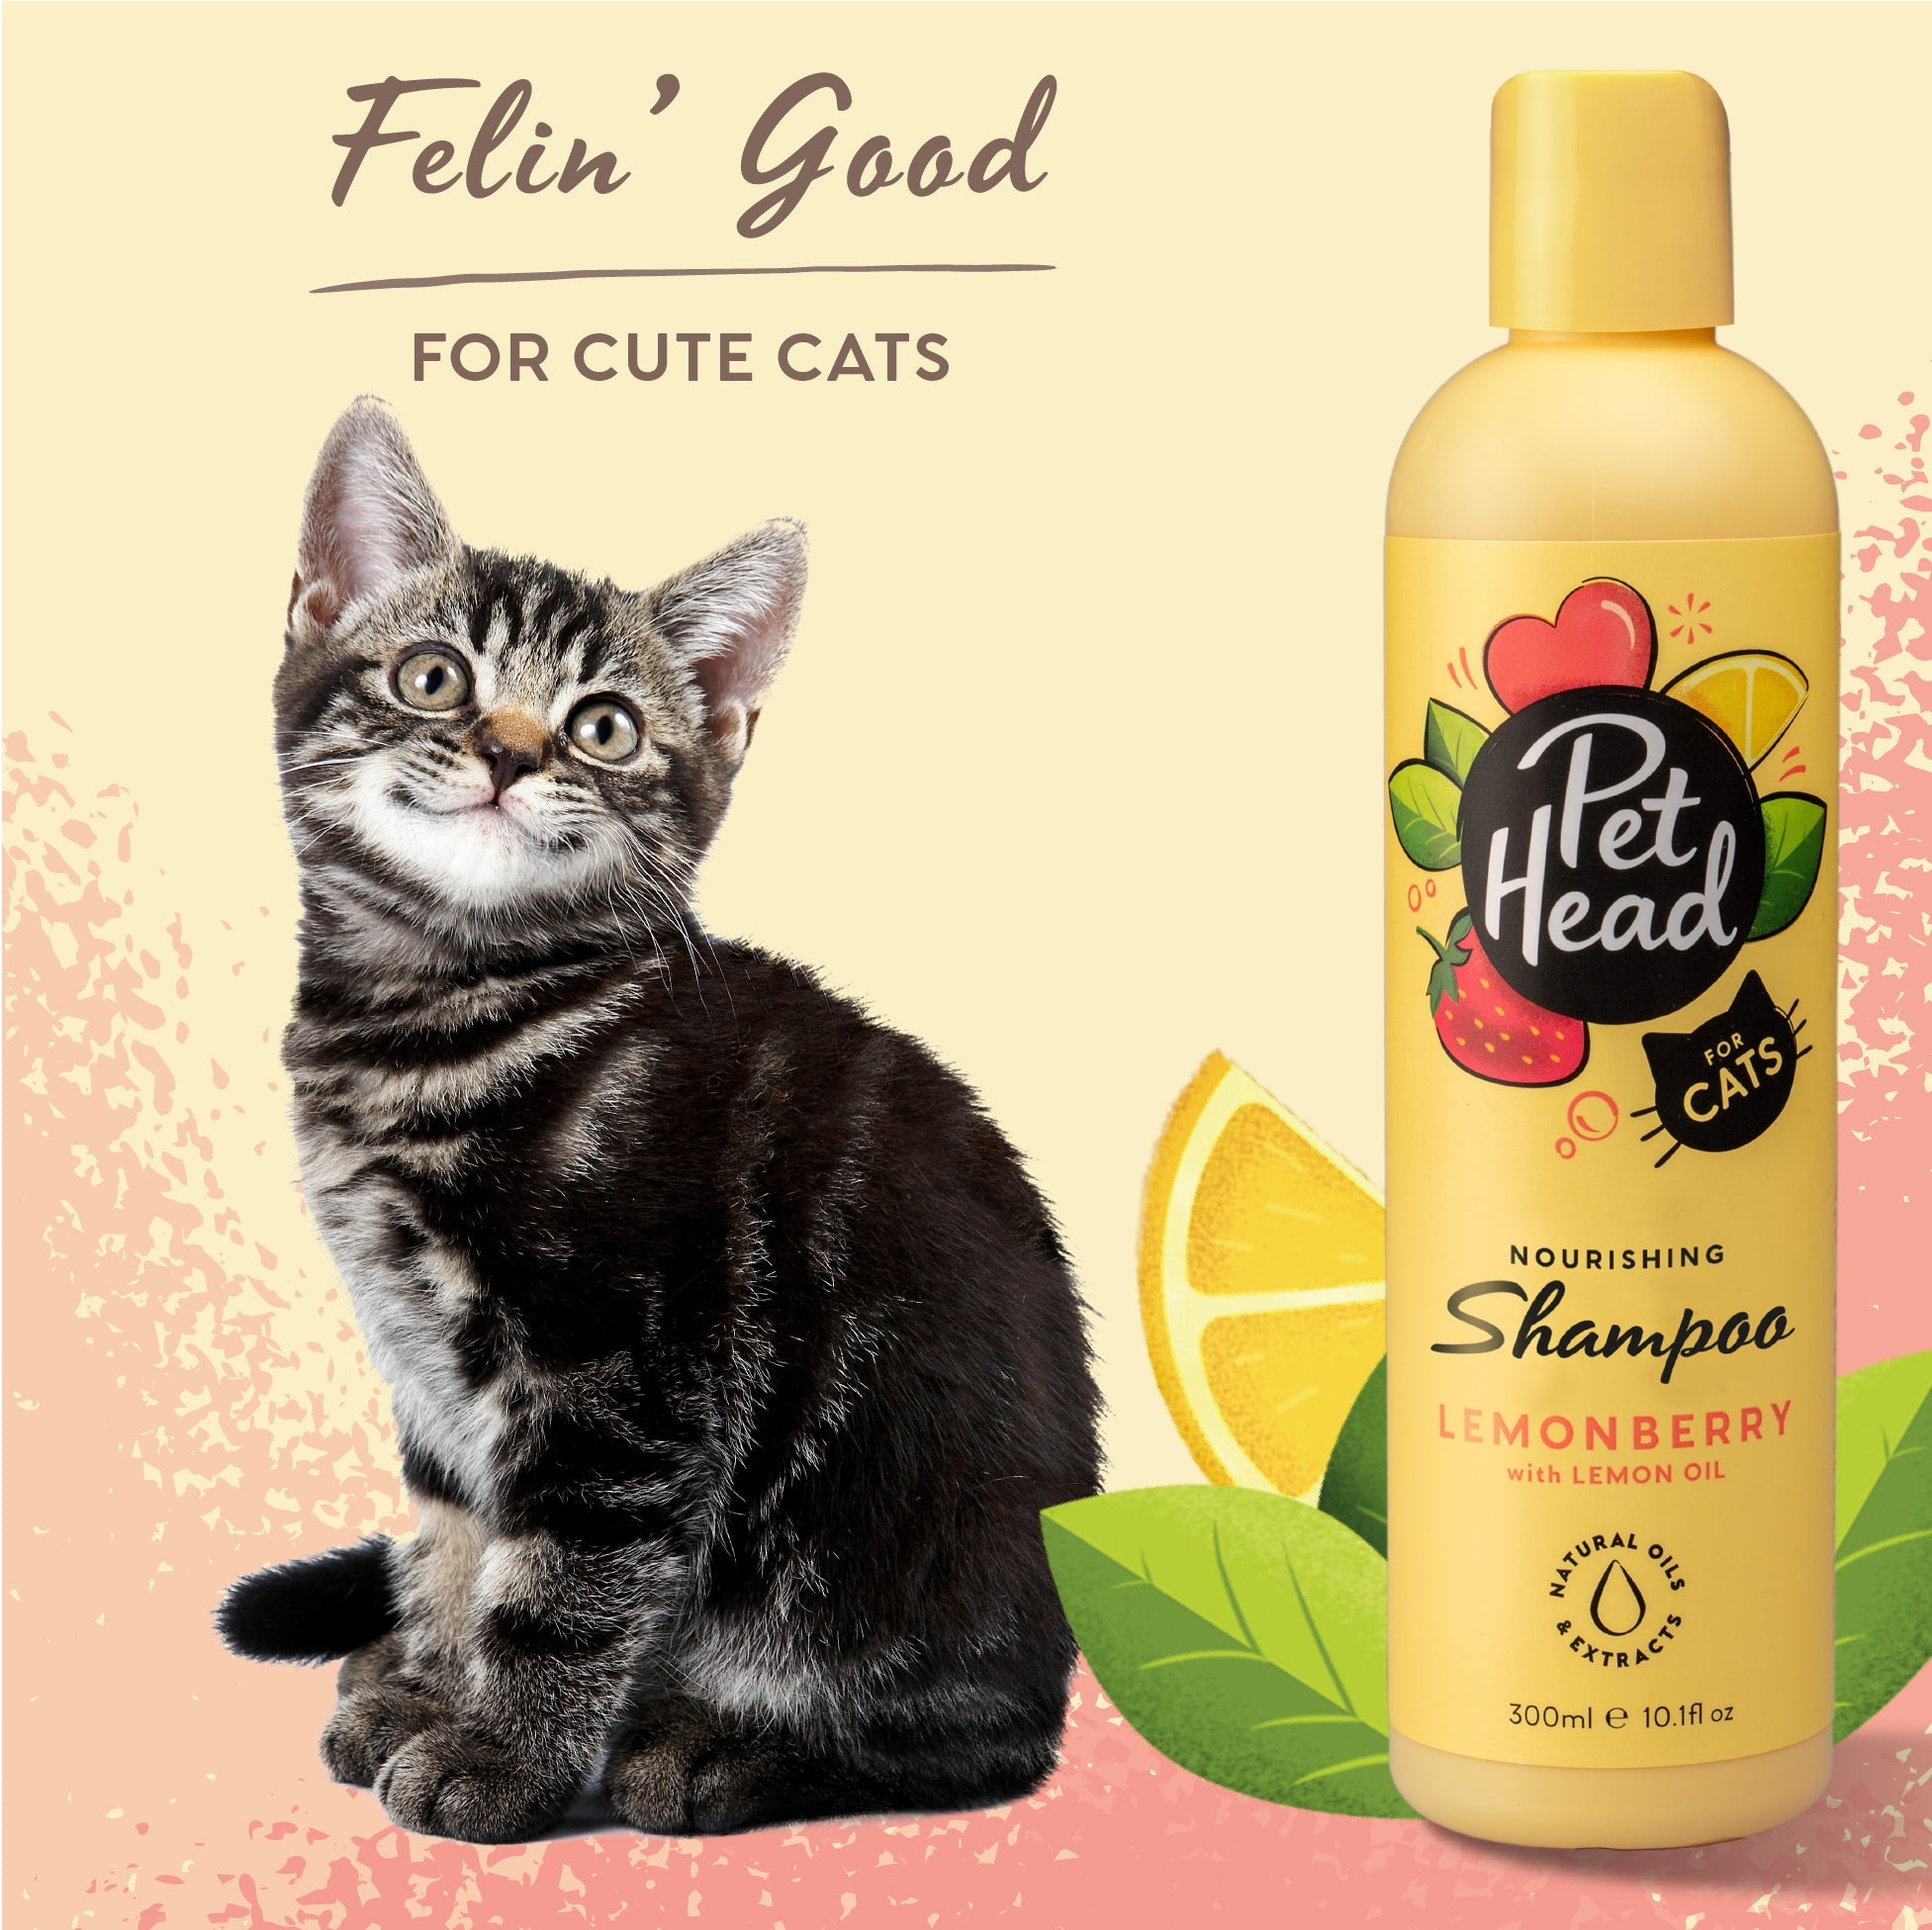 Pet Head Felin' Good Cat Shampoo 300ml